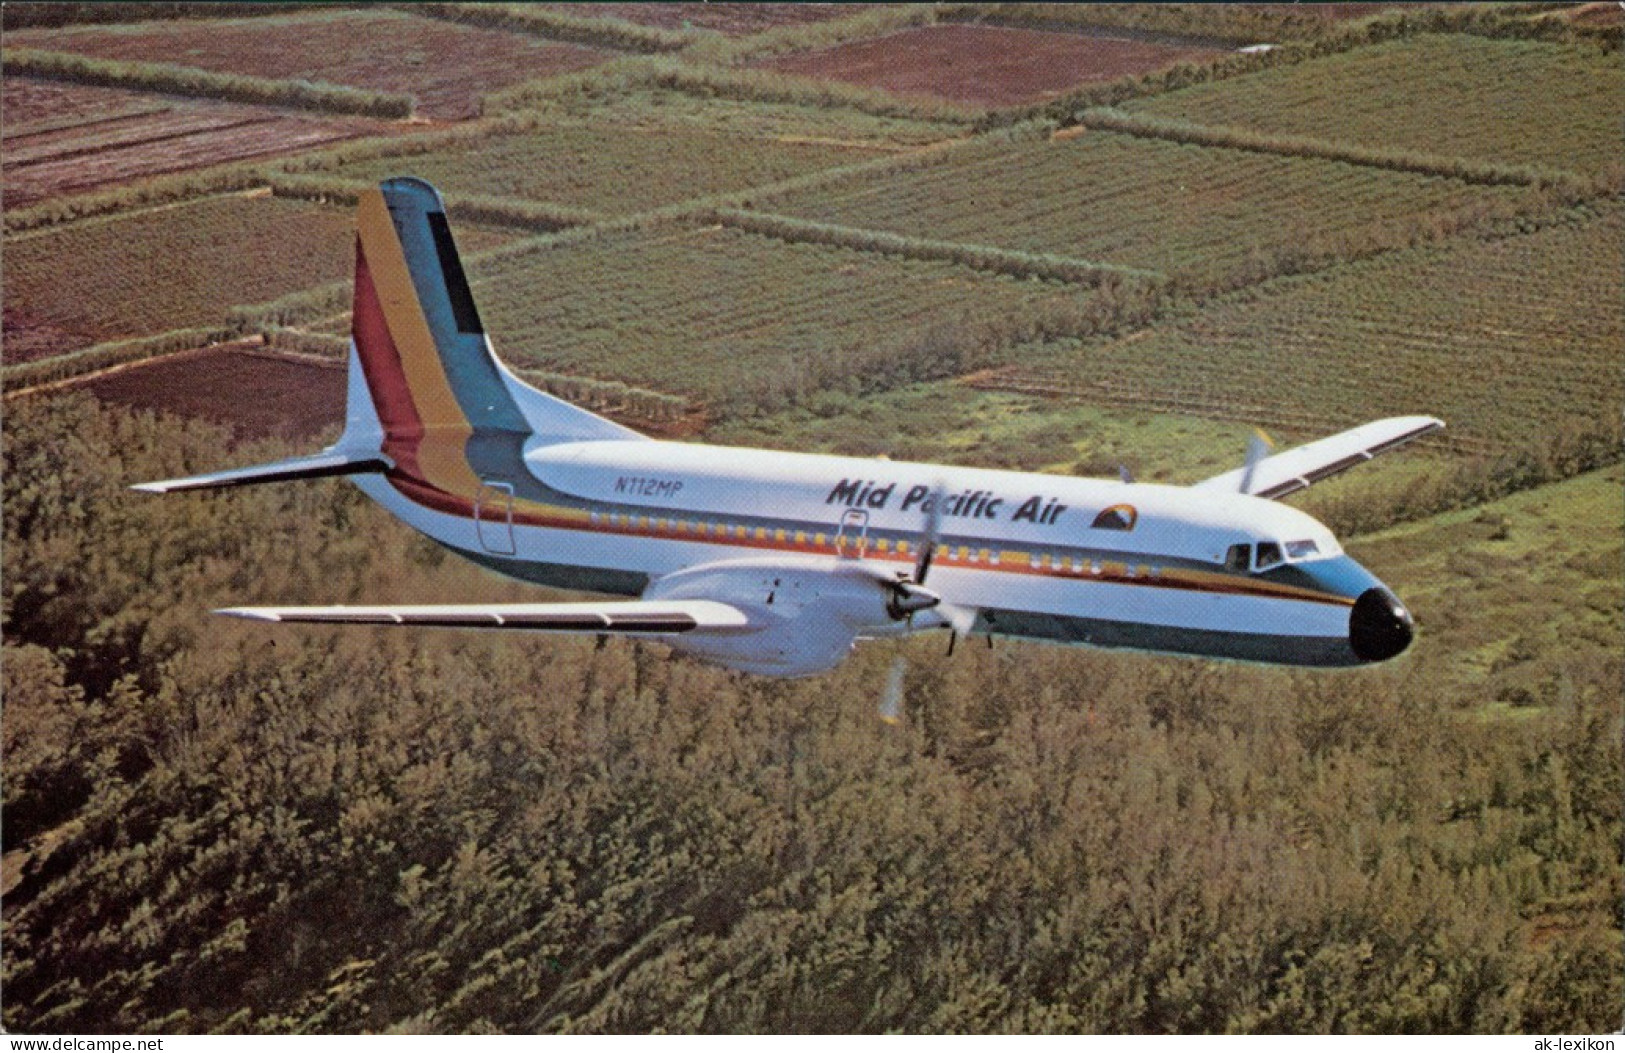 Ansichtskarte  Mid Pacific Airlines YS-11 1990 - 1946-....: Modern Era